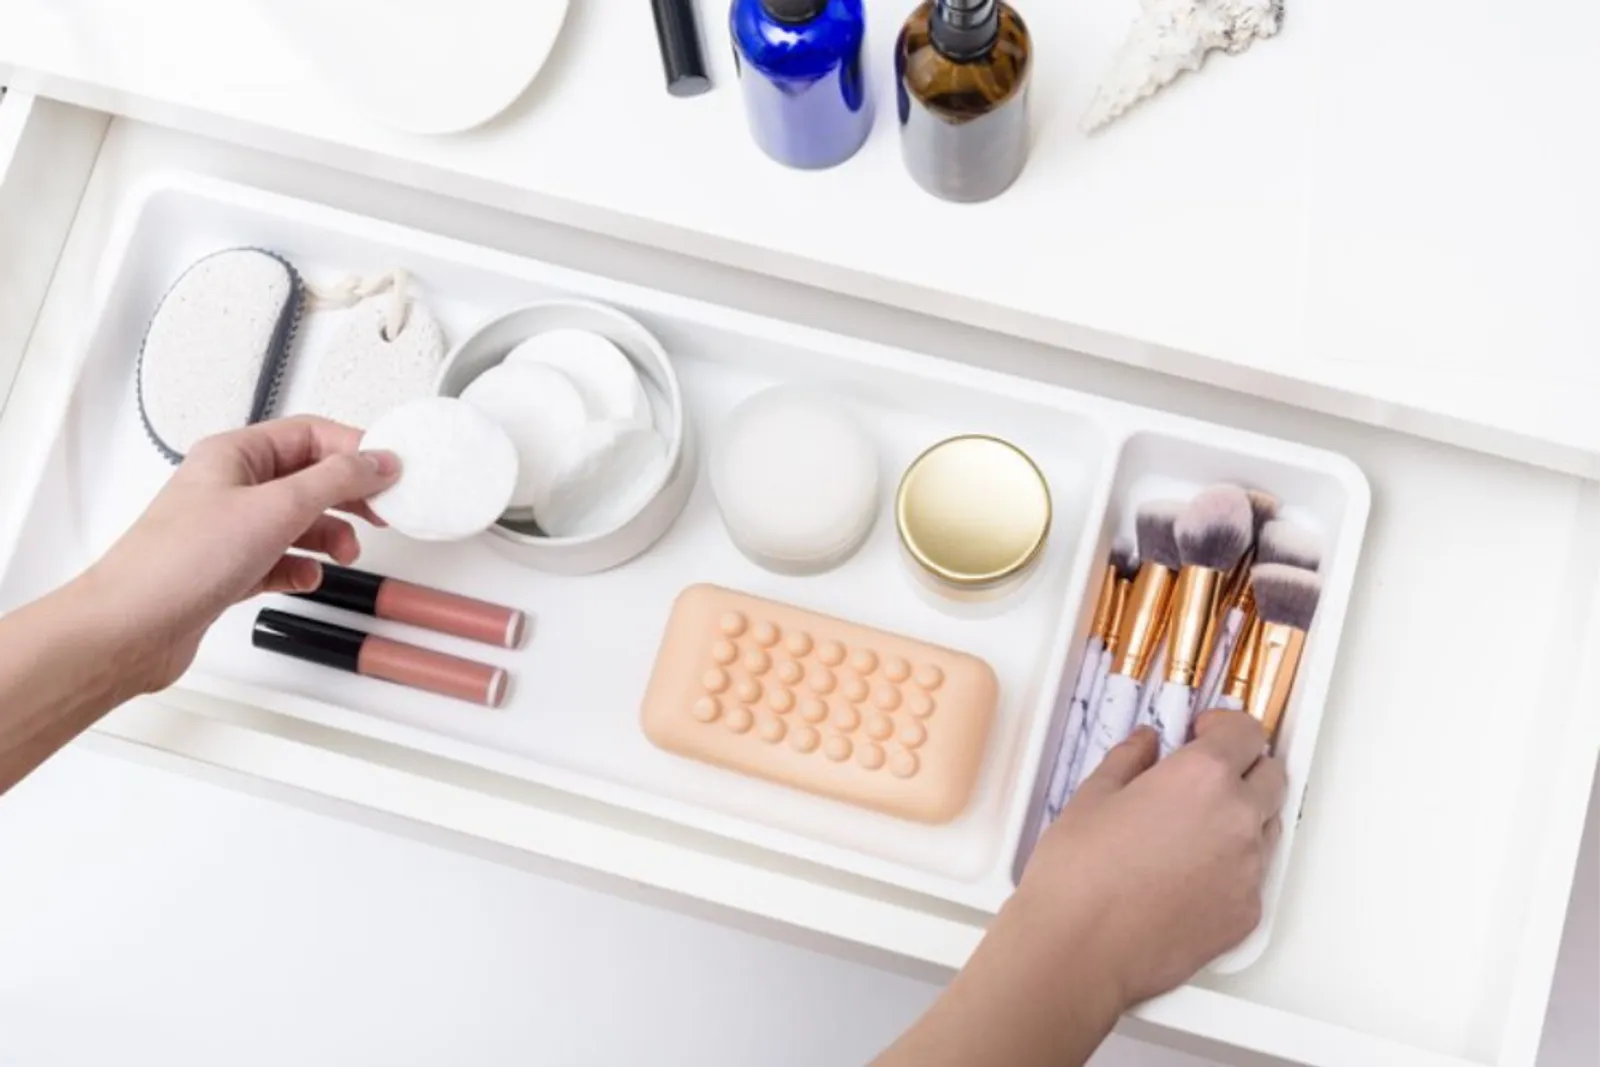 Agar Tetap Bersih, Ini Cara Merawat Alat Makeup dengan Mudah